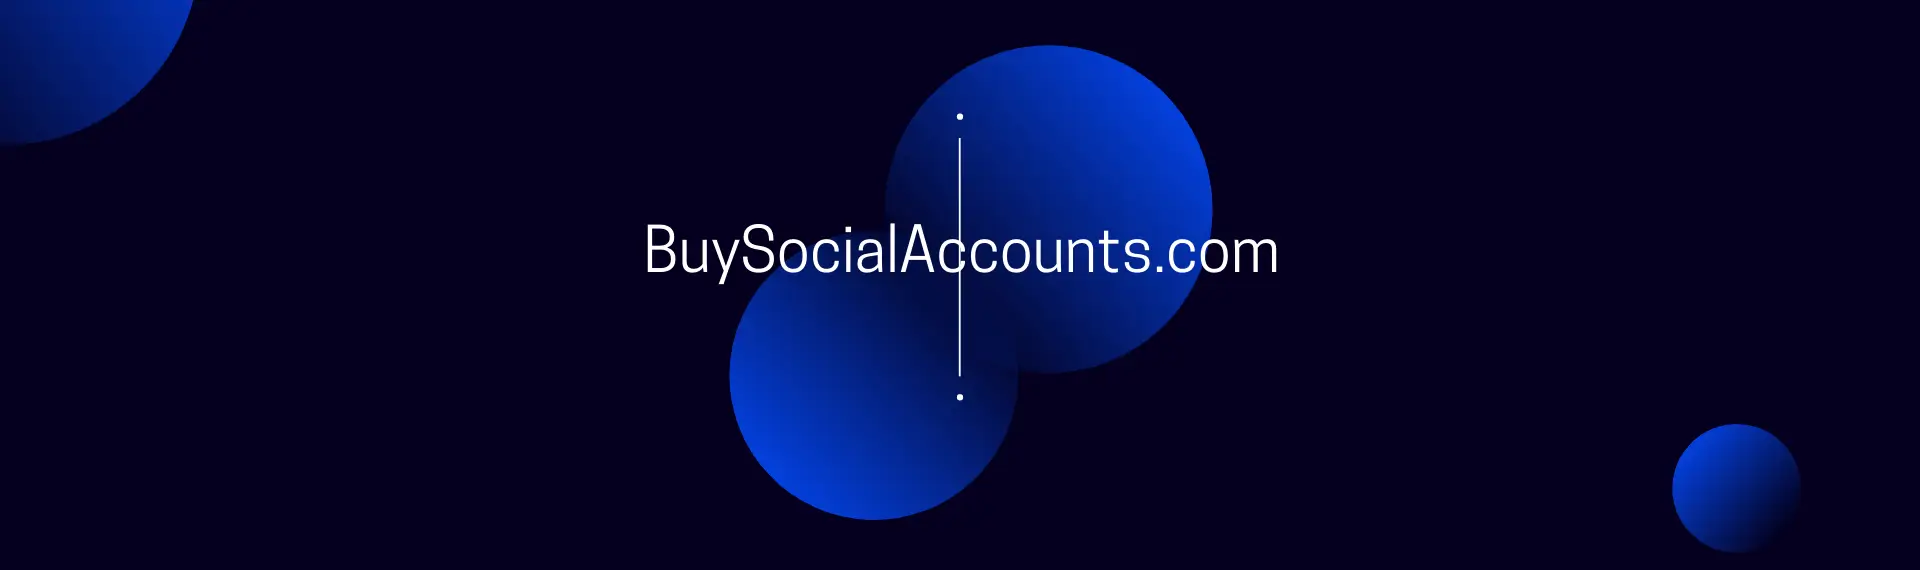 BuySocialAccounts